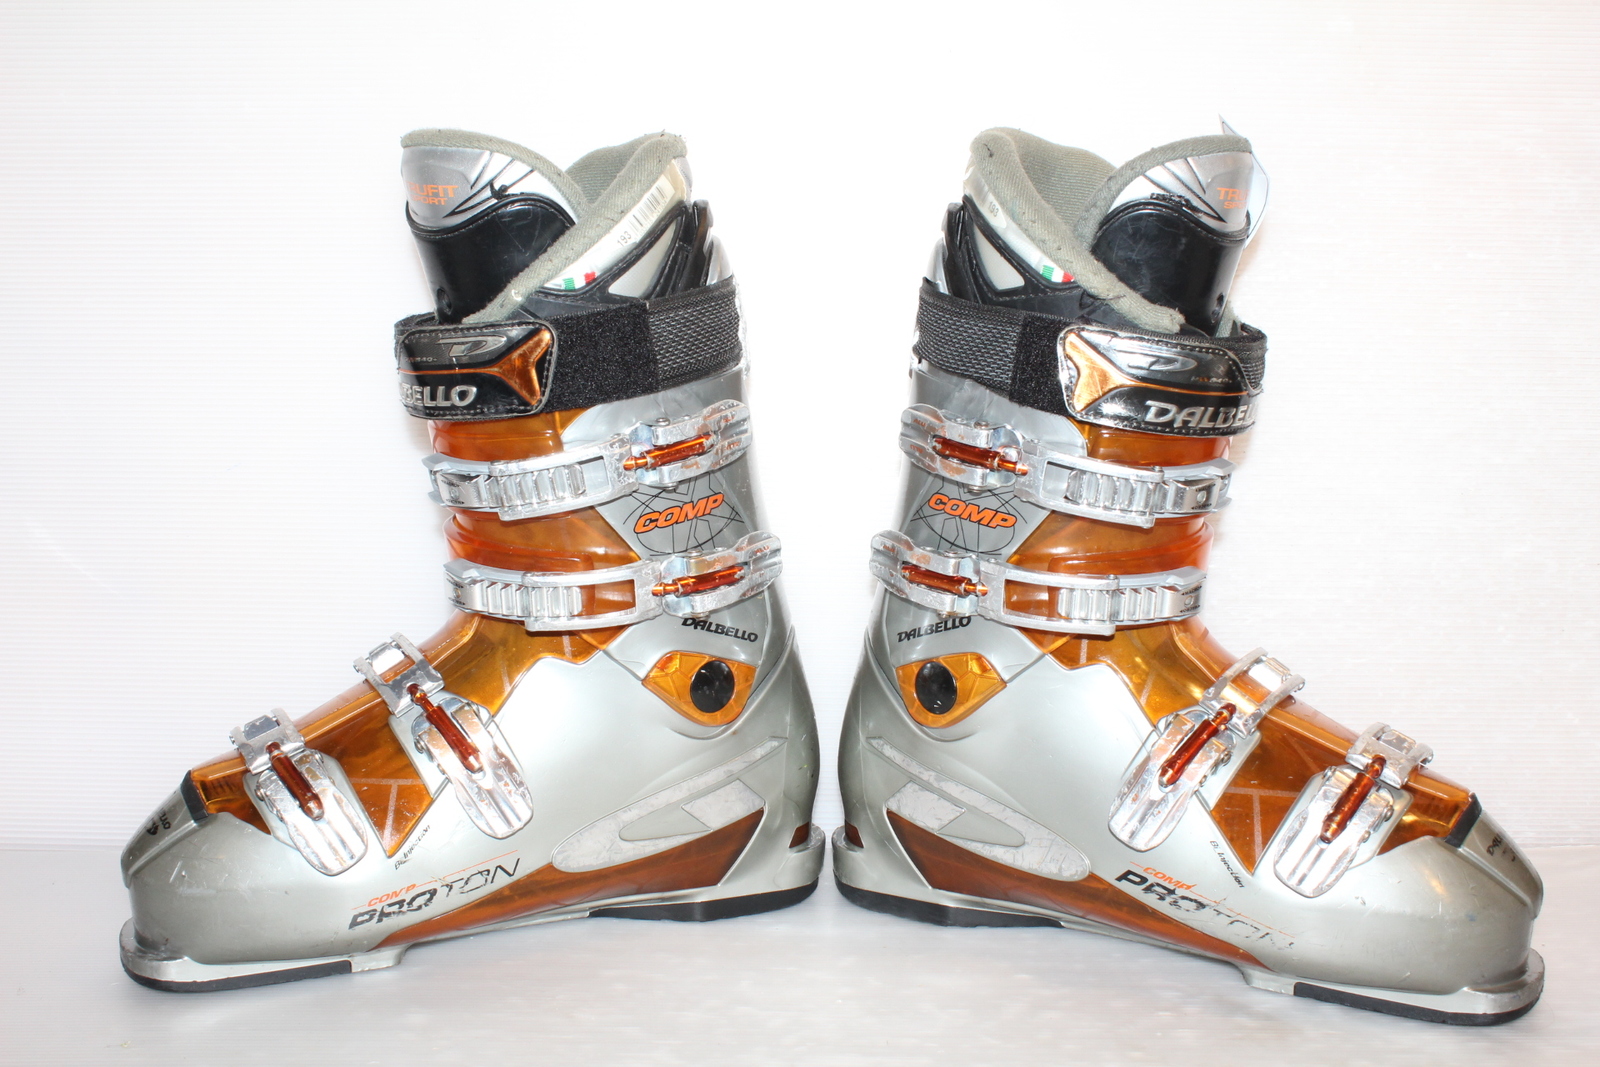 Lyžařské boty Dalbello Comp Proton vel. EU44.5 flexe 70